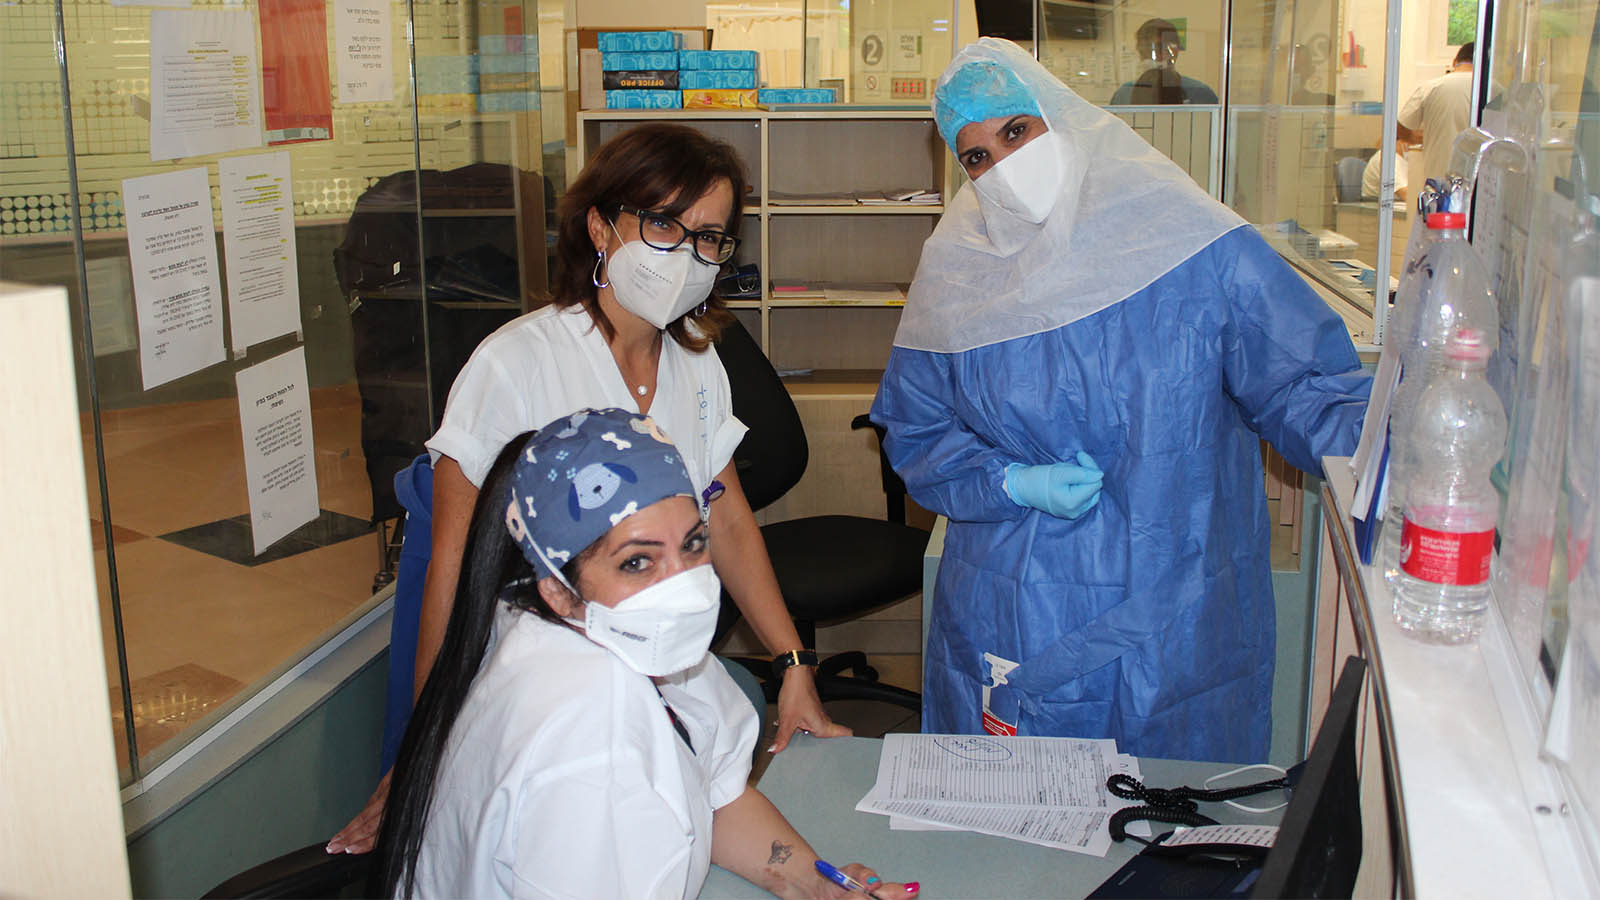 ديانا كليشر (في الأعلى من اليسار)، الممرضة المسؤولة في غرفة طوارئ المركز الطبي للجليل سوية مع طاقم الممرضات في غرفة الطوارئ (تصوير: مور هوفرط)